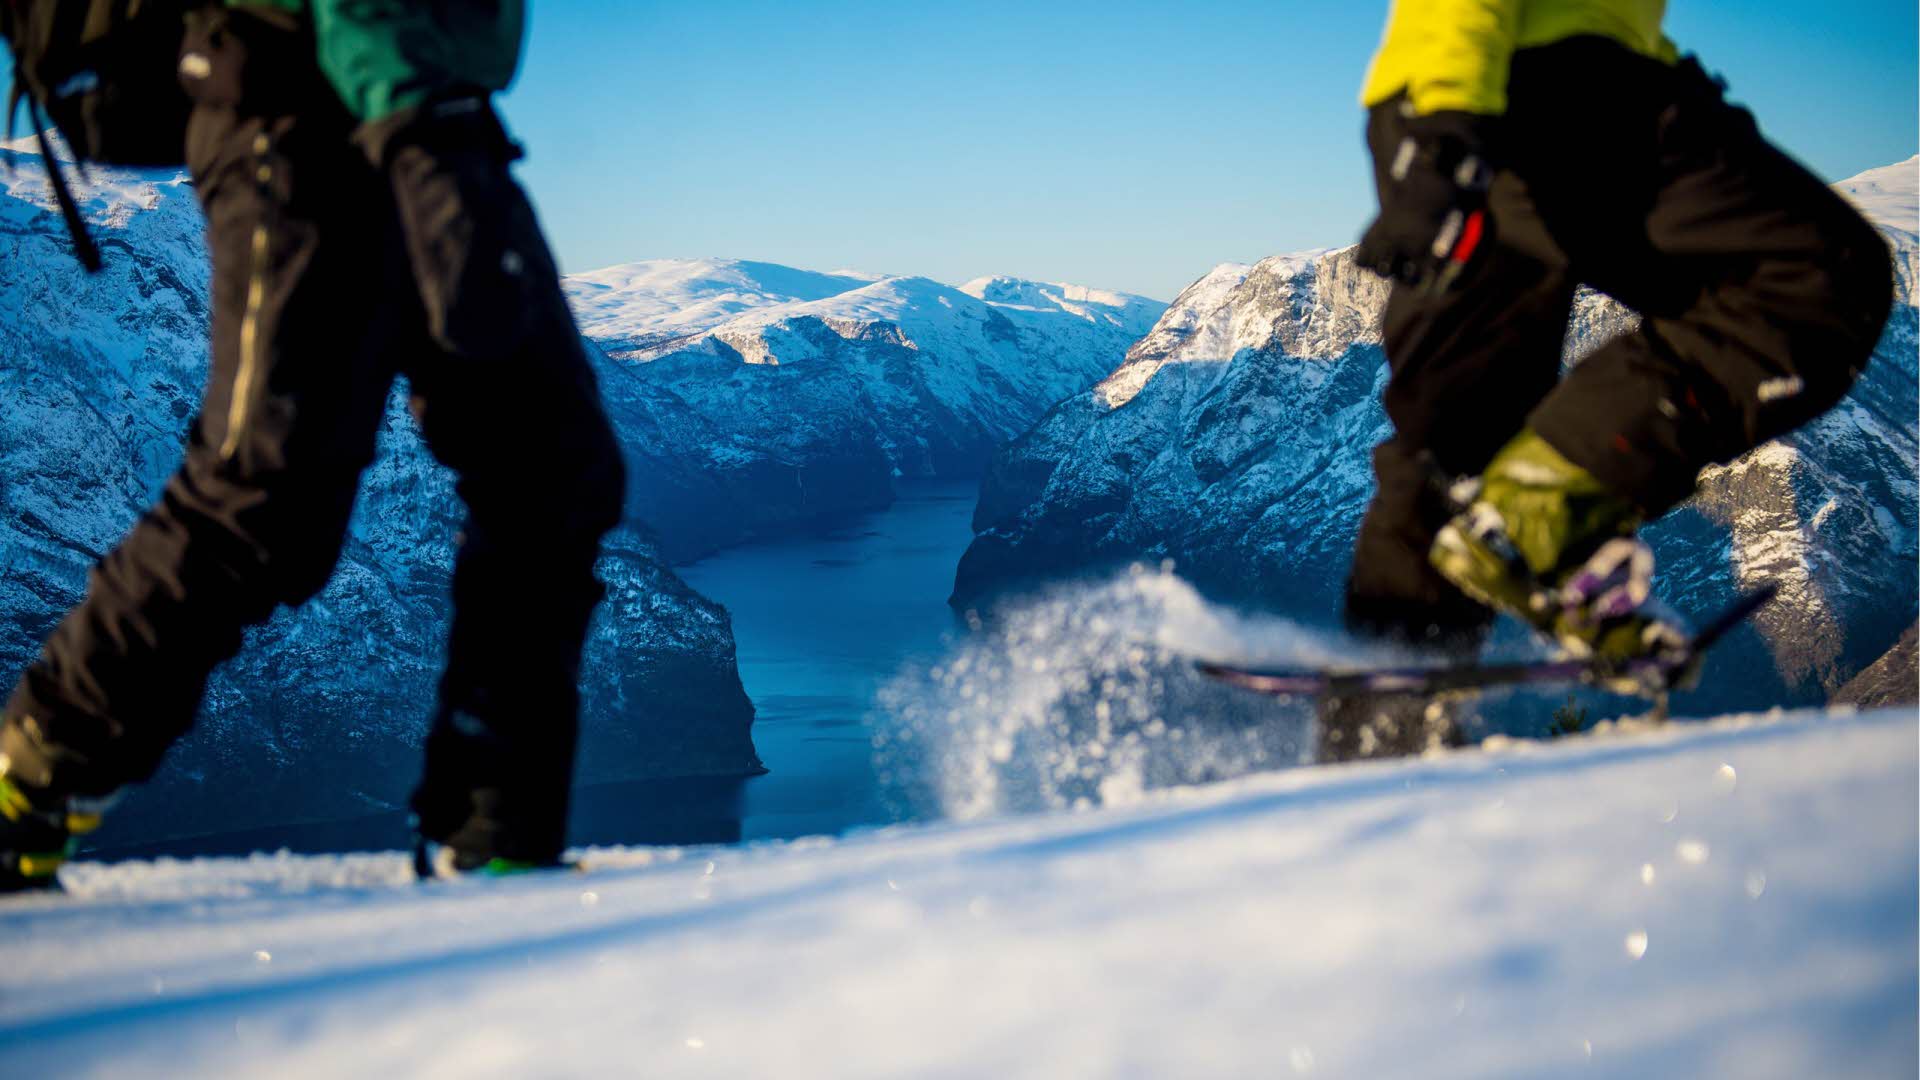 两个人腿上穿着雪鞋行走在艾于兰峡湾 (Aurlandsfjord) 上方